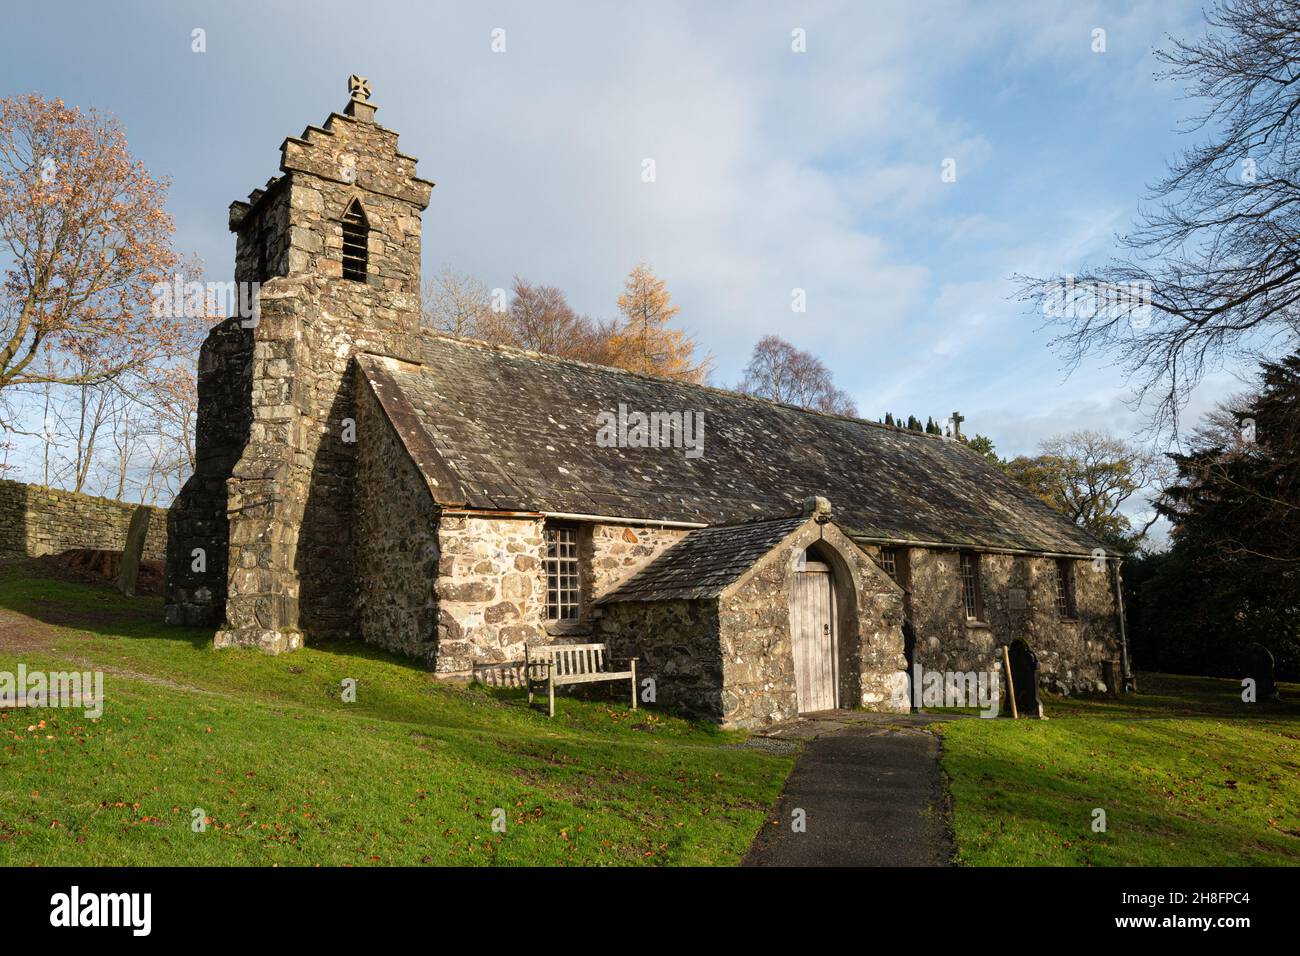 L'église Matterdale, un bâtiment classé II* dans le parc national du Lake District, Cumbria, Angleterre, Royaume-Uni, en automne ou en novembre Banque D'Images